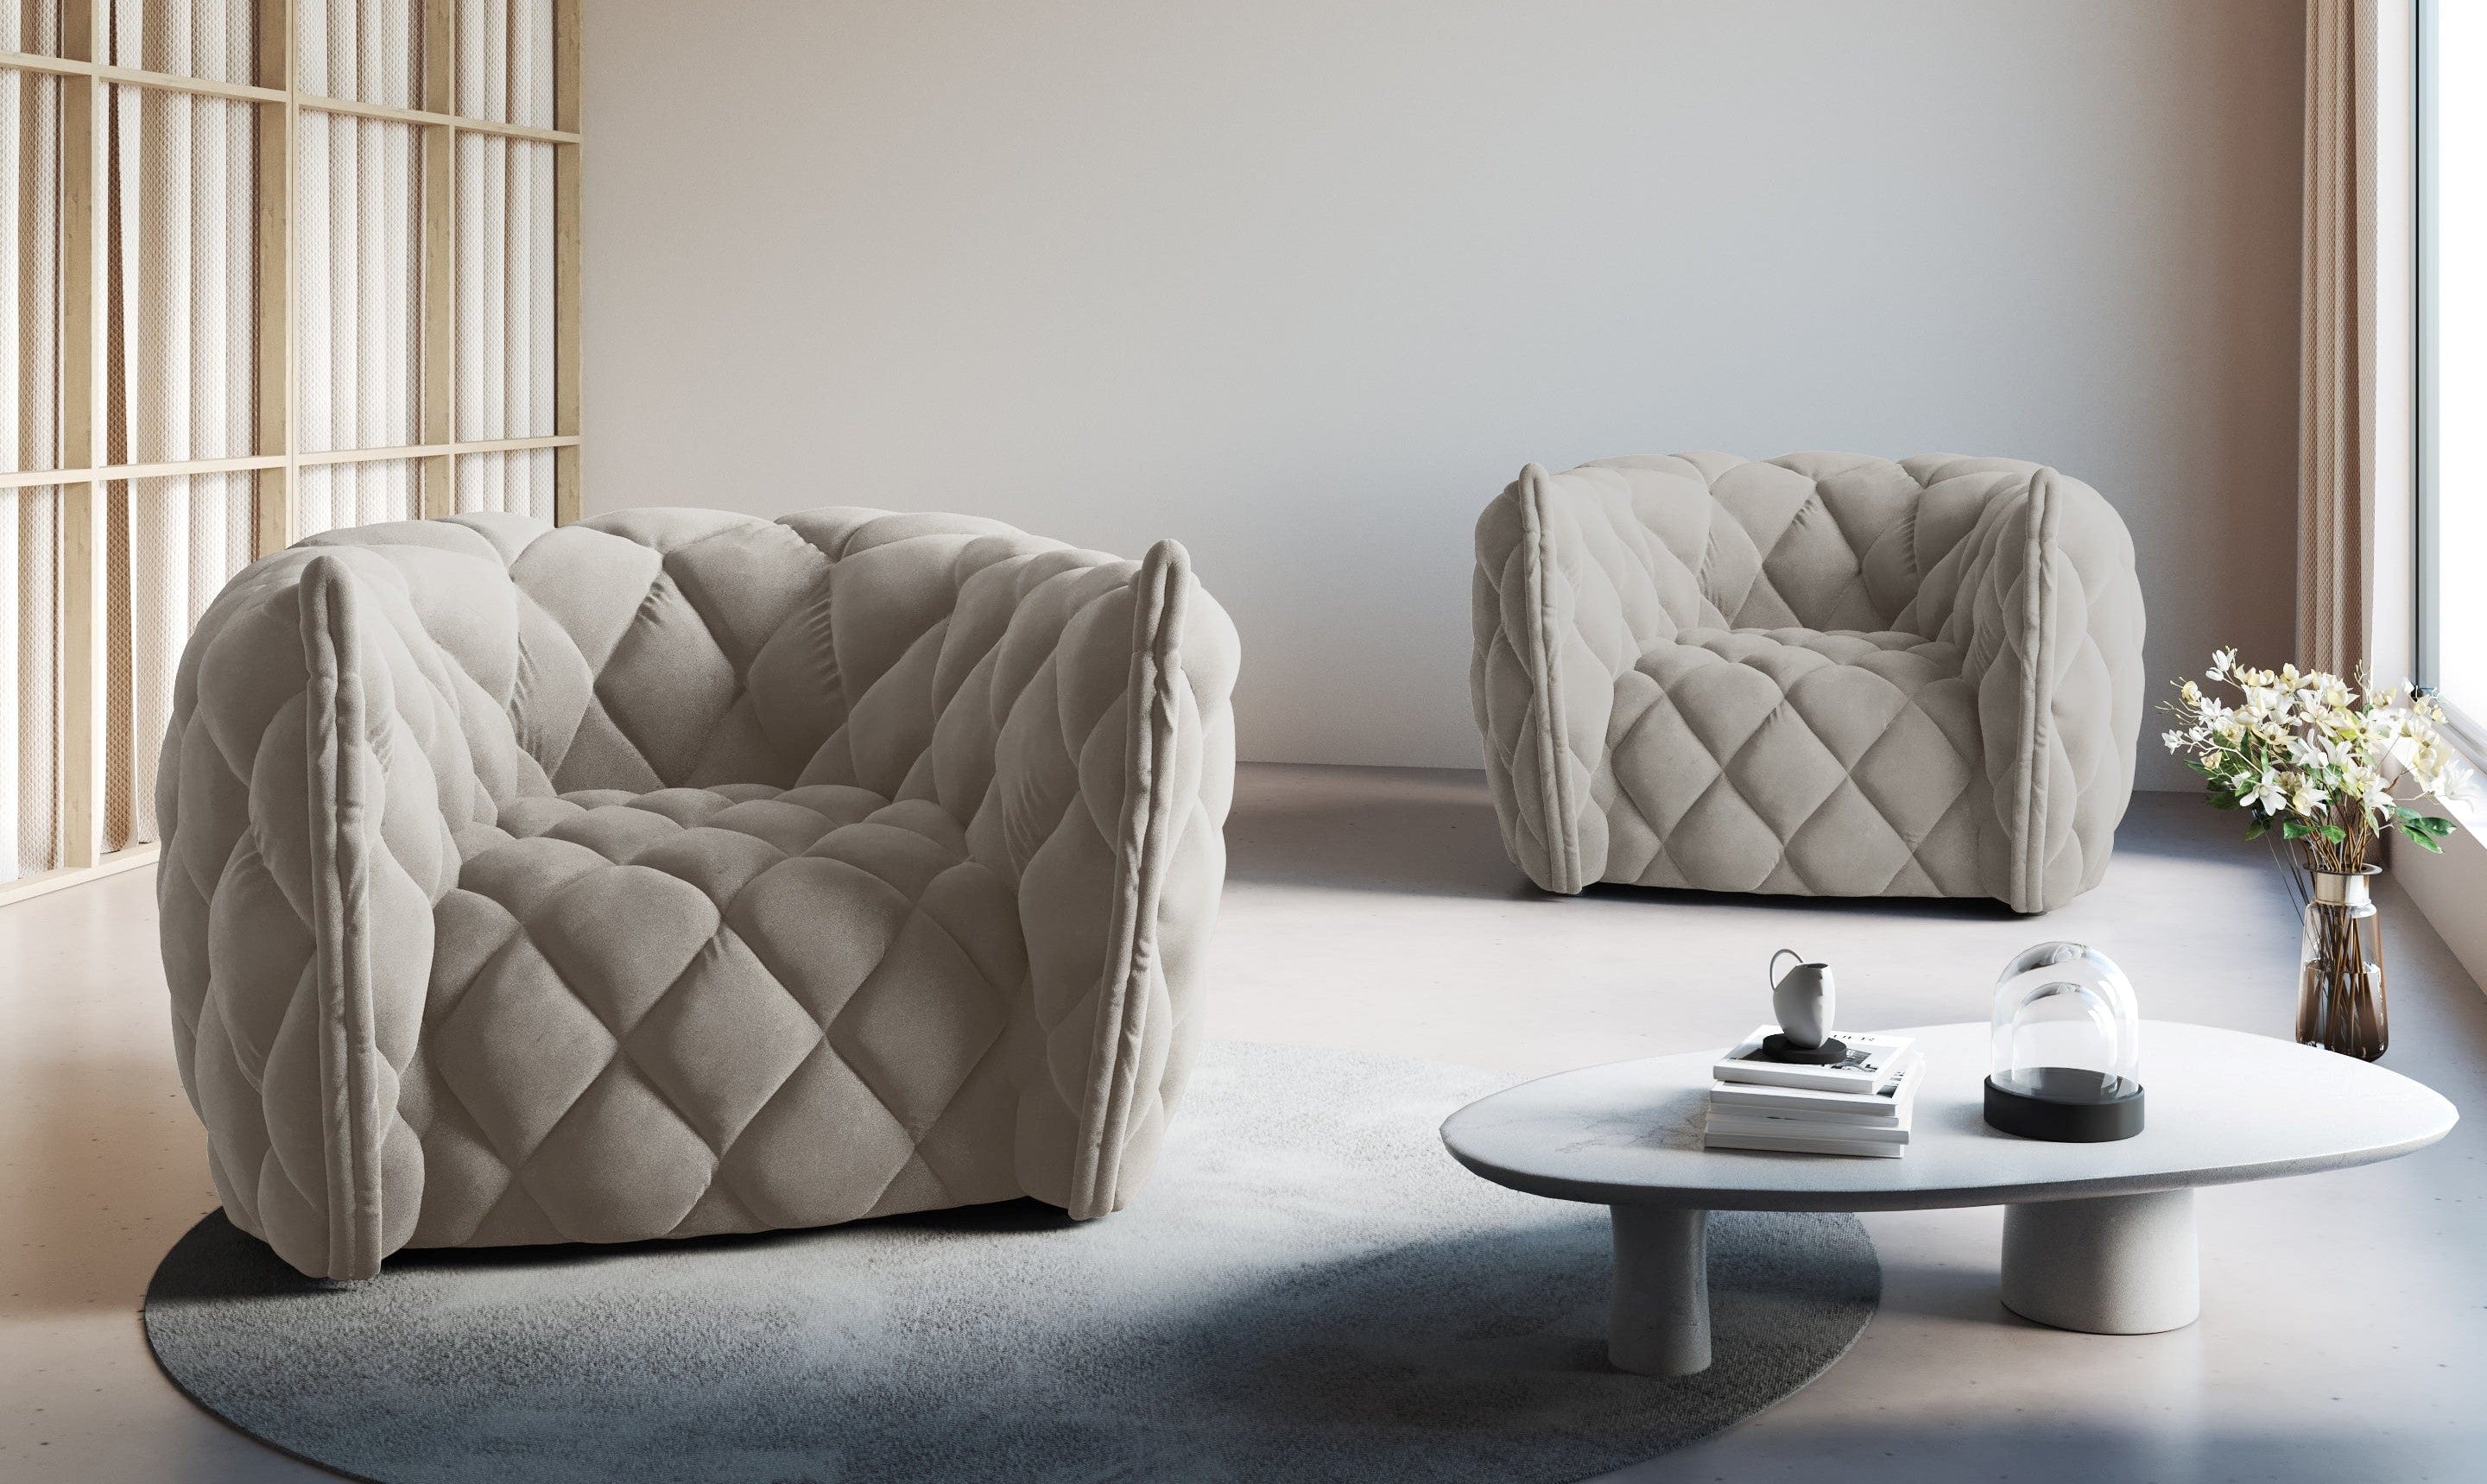 Na zdjęciu znajdują się dwa niebanalne fotele wykonane z charakterystycznego, pikowanego materiału. Fotele w kolorze beżowym wyróżniają się minimalistycznym designem i prostą formą połączoną z ciekawą fakturą.